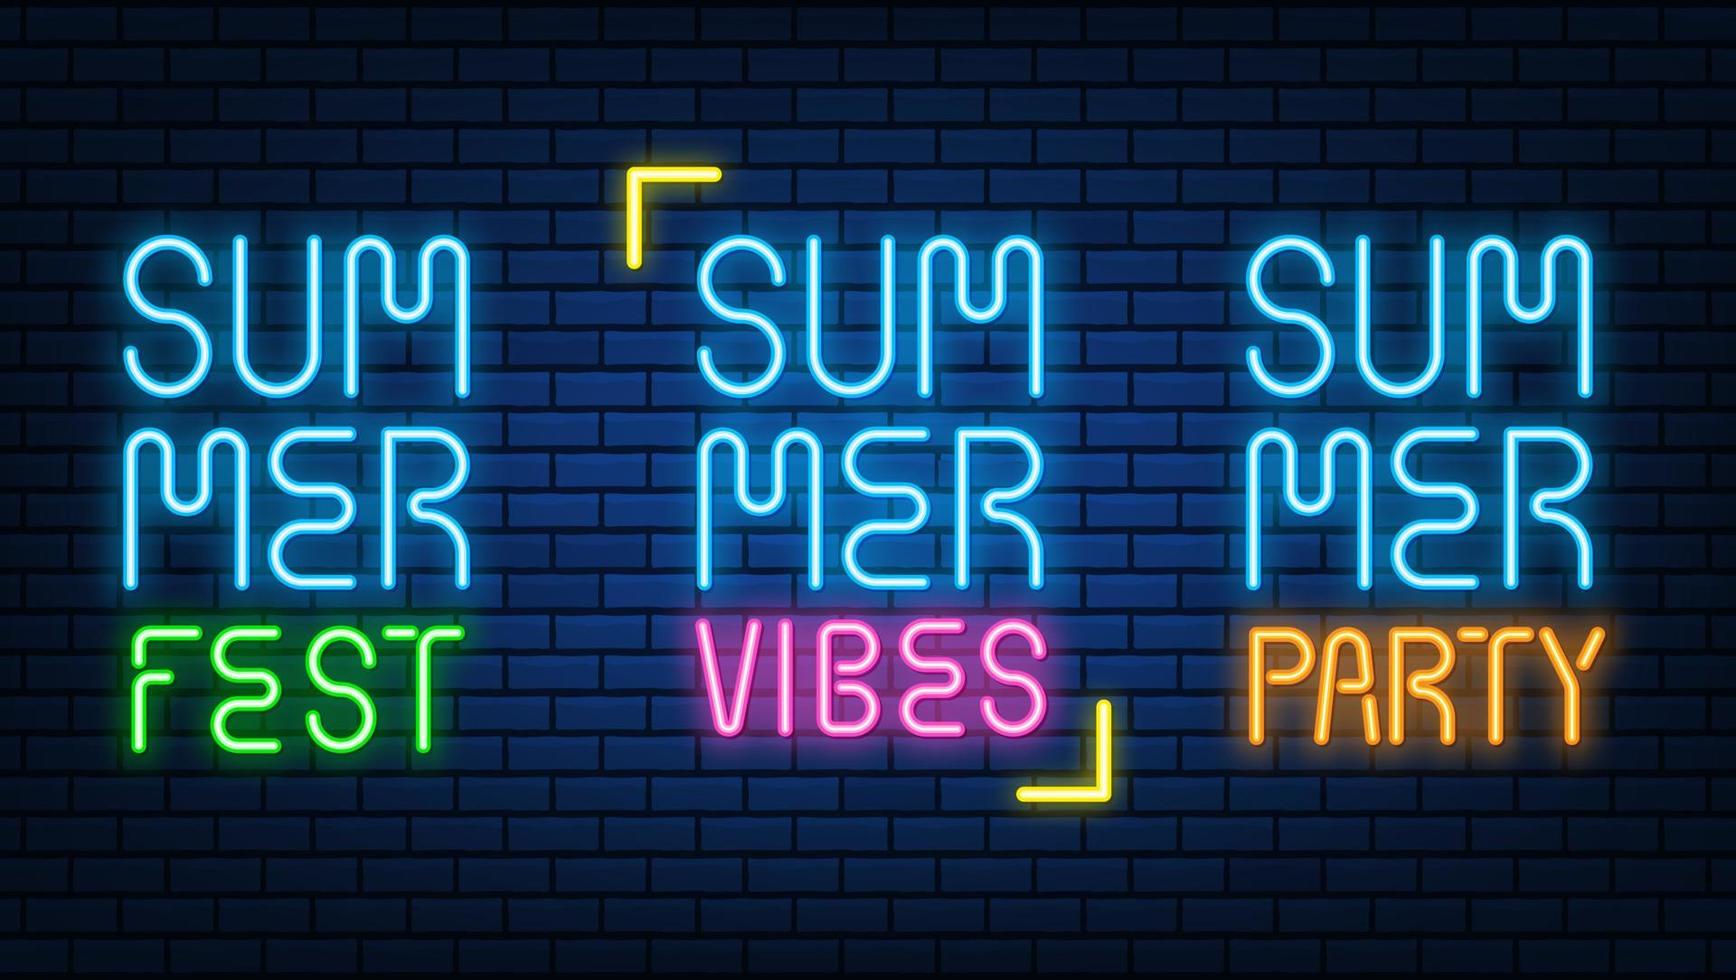 neón verano viber letreros de texto color brillante brillante led o lámparas halógenas enmarcan pancartas. en el conjunto de vectores de pared de ladrillo.